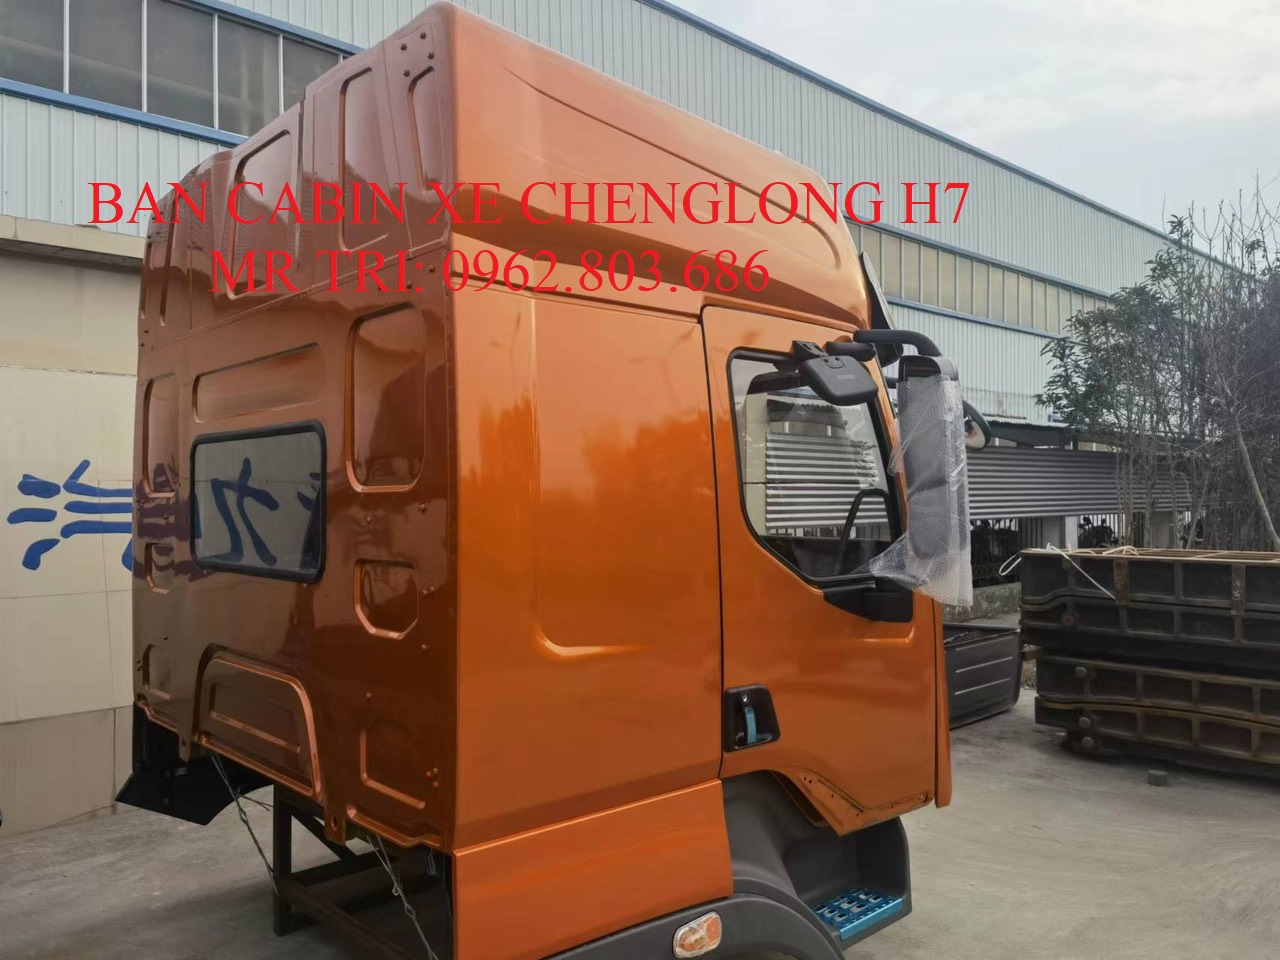 ban-cabin-xe-chenglong-h7